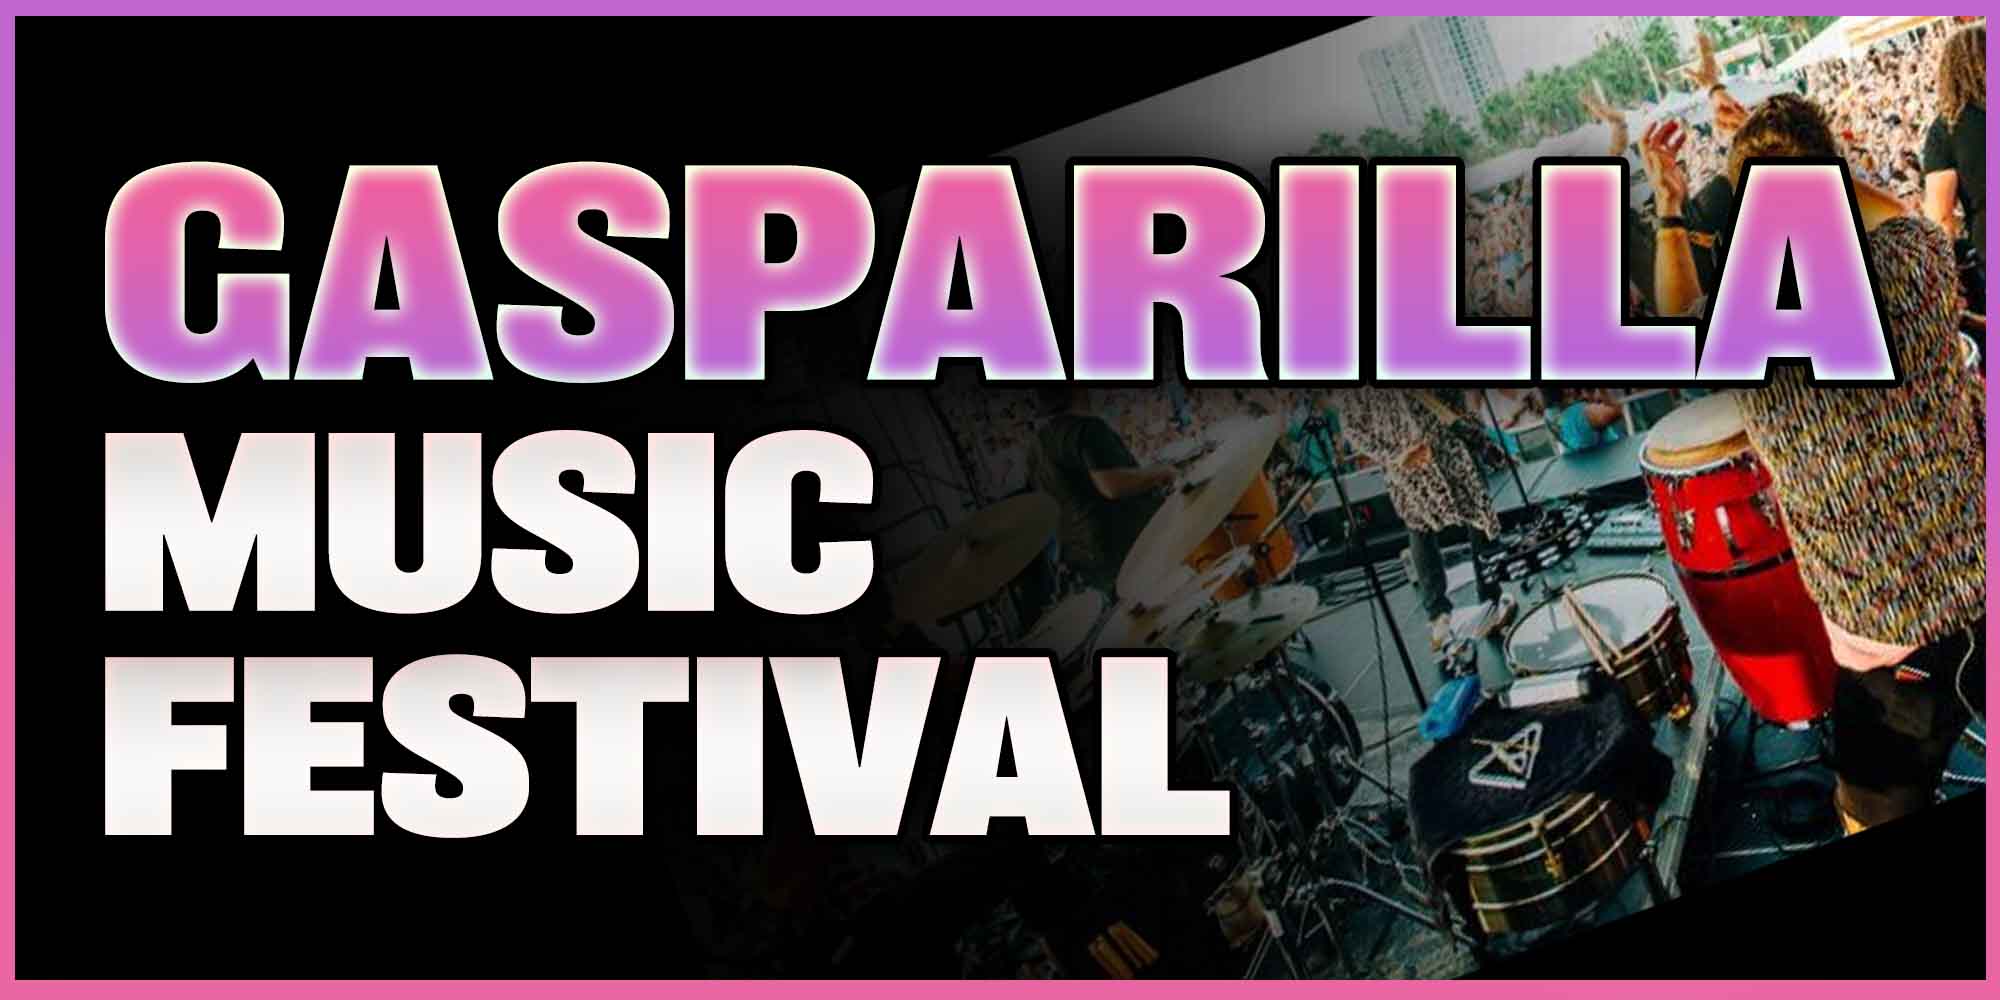 Gasparilla Music Festival